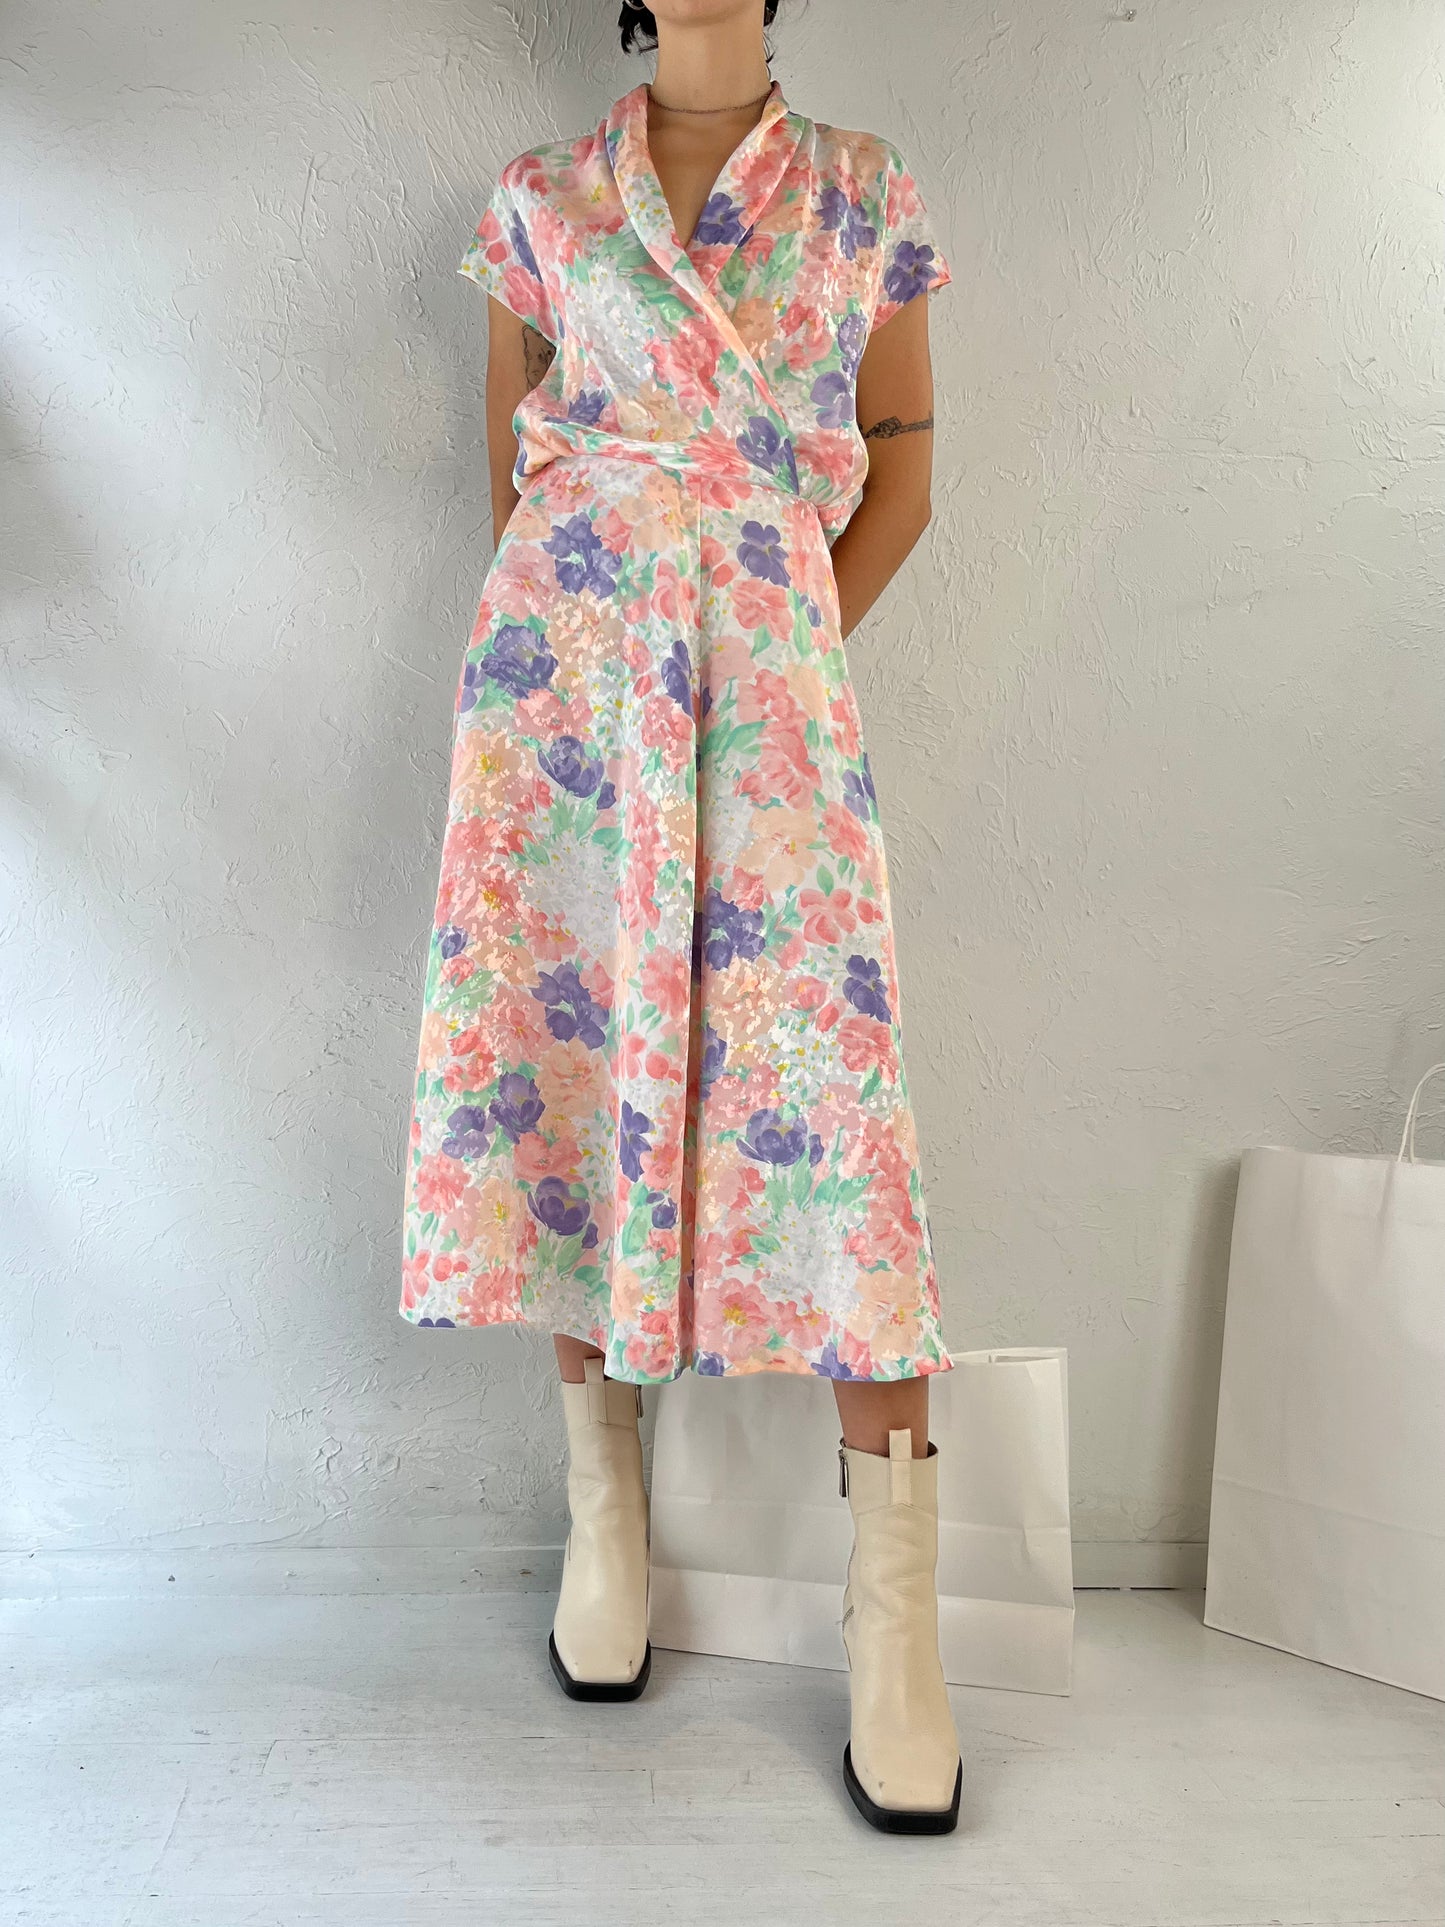 80s Pastel Floral Print Midi Dress / Small